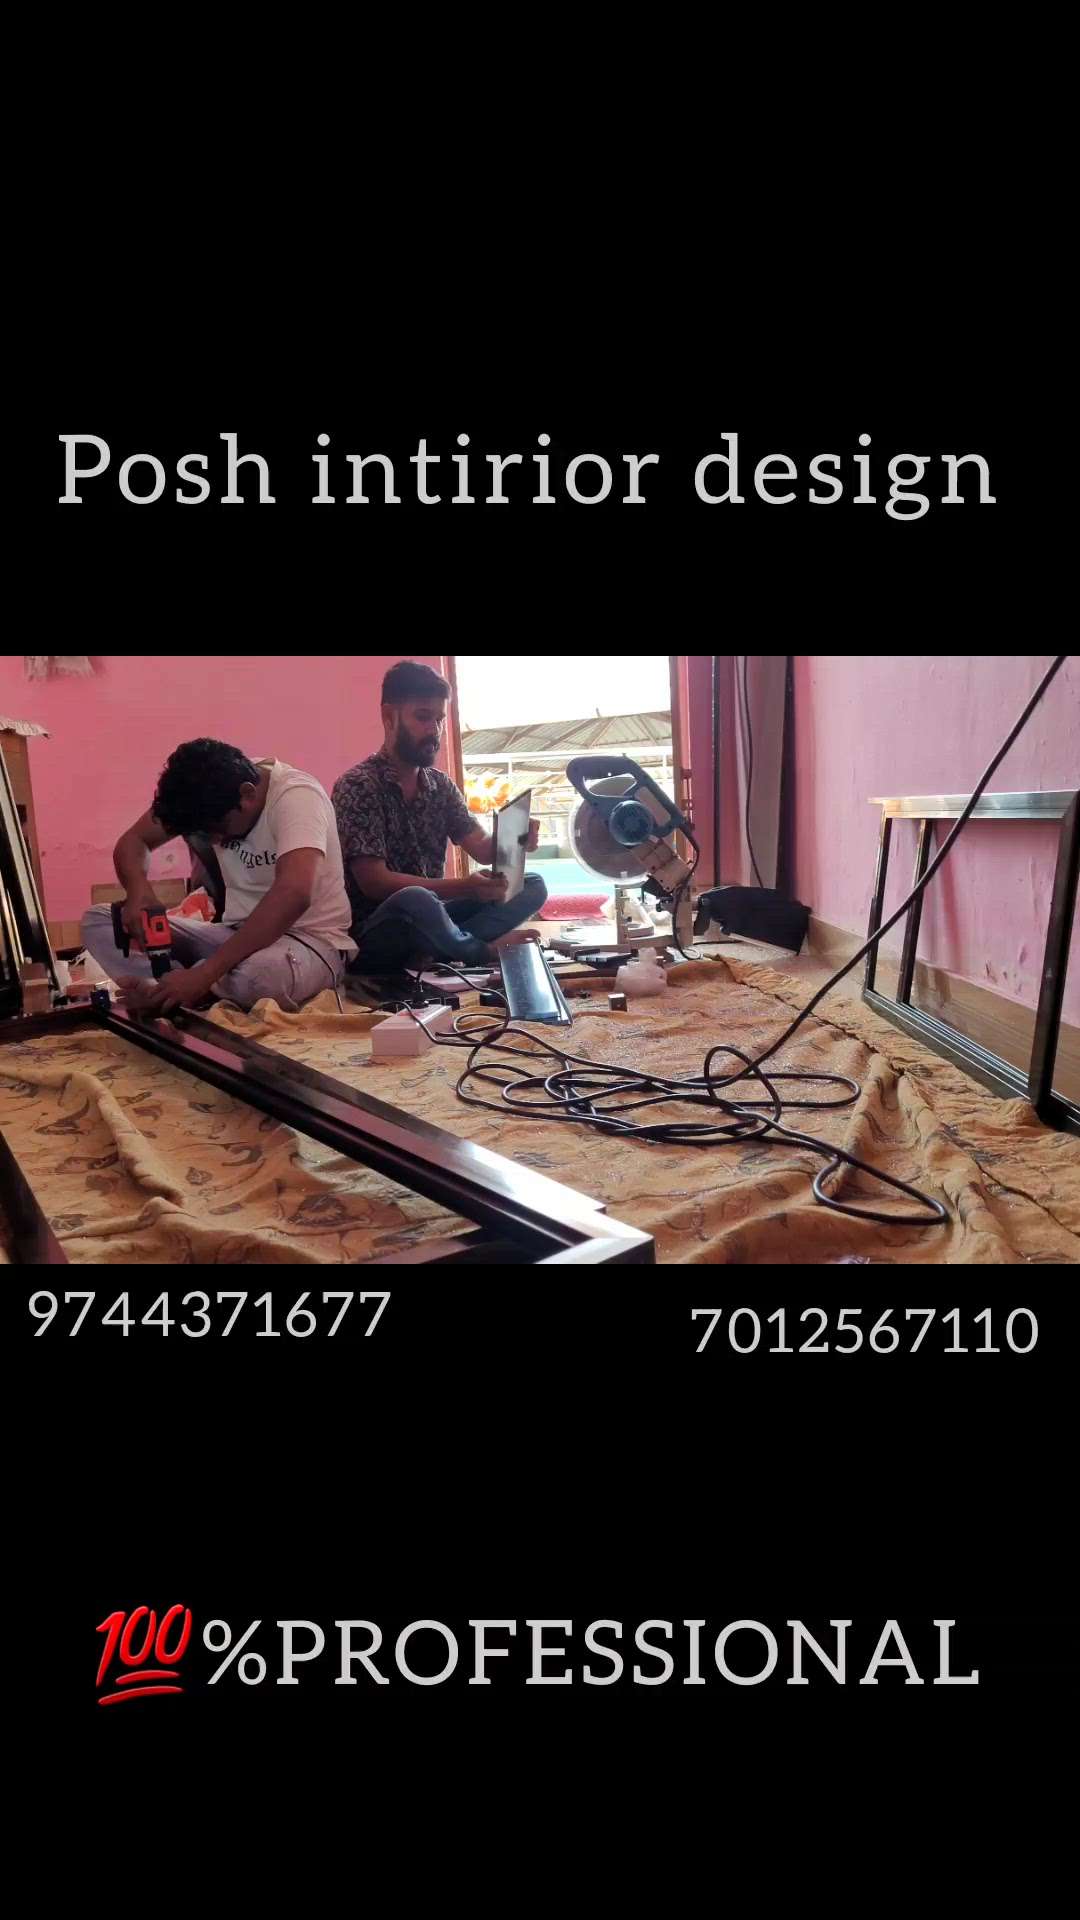 posh intirior design 
9744371677
 #InteriorDesigner